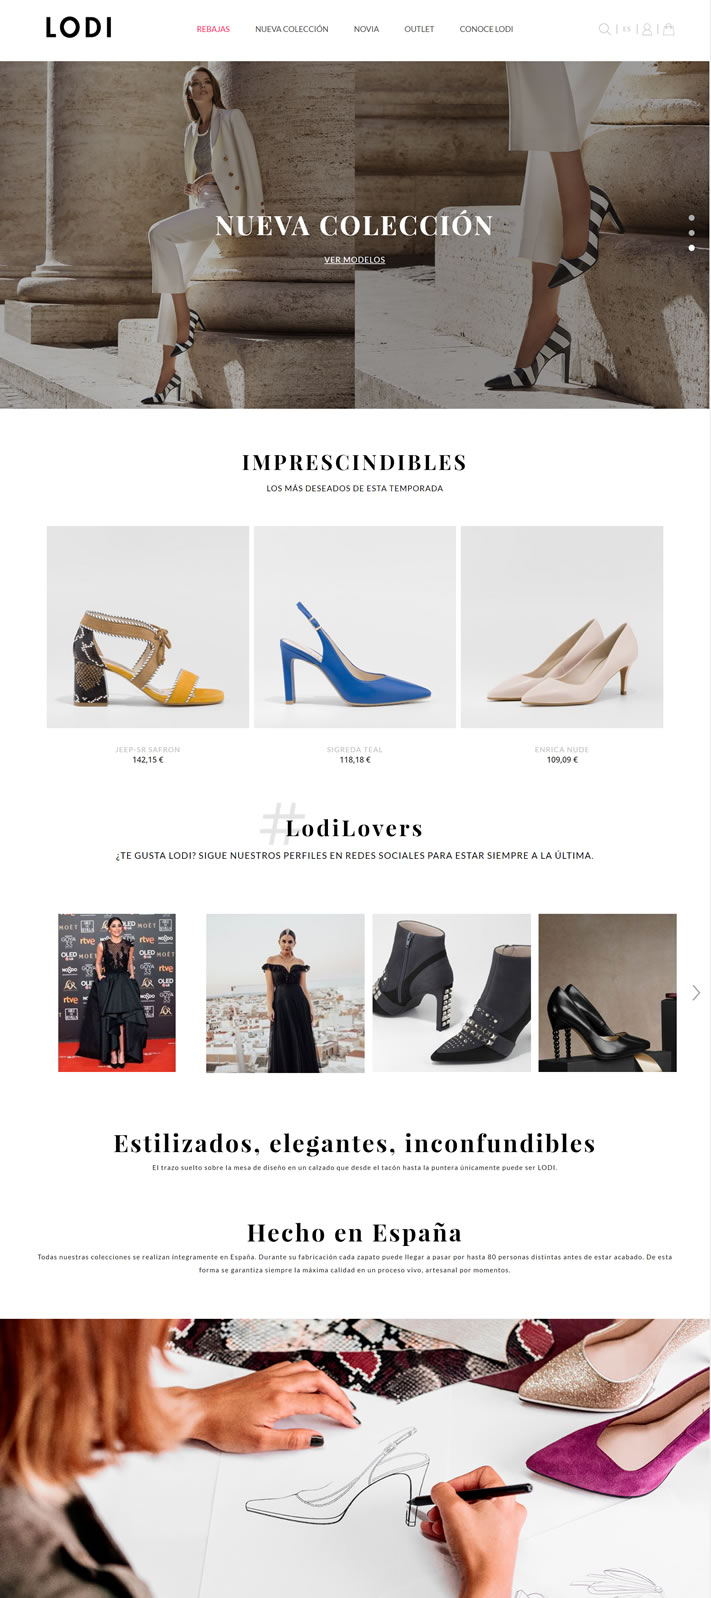 LODI女鞋在线商店：阿利坎特的鞋类品牌